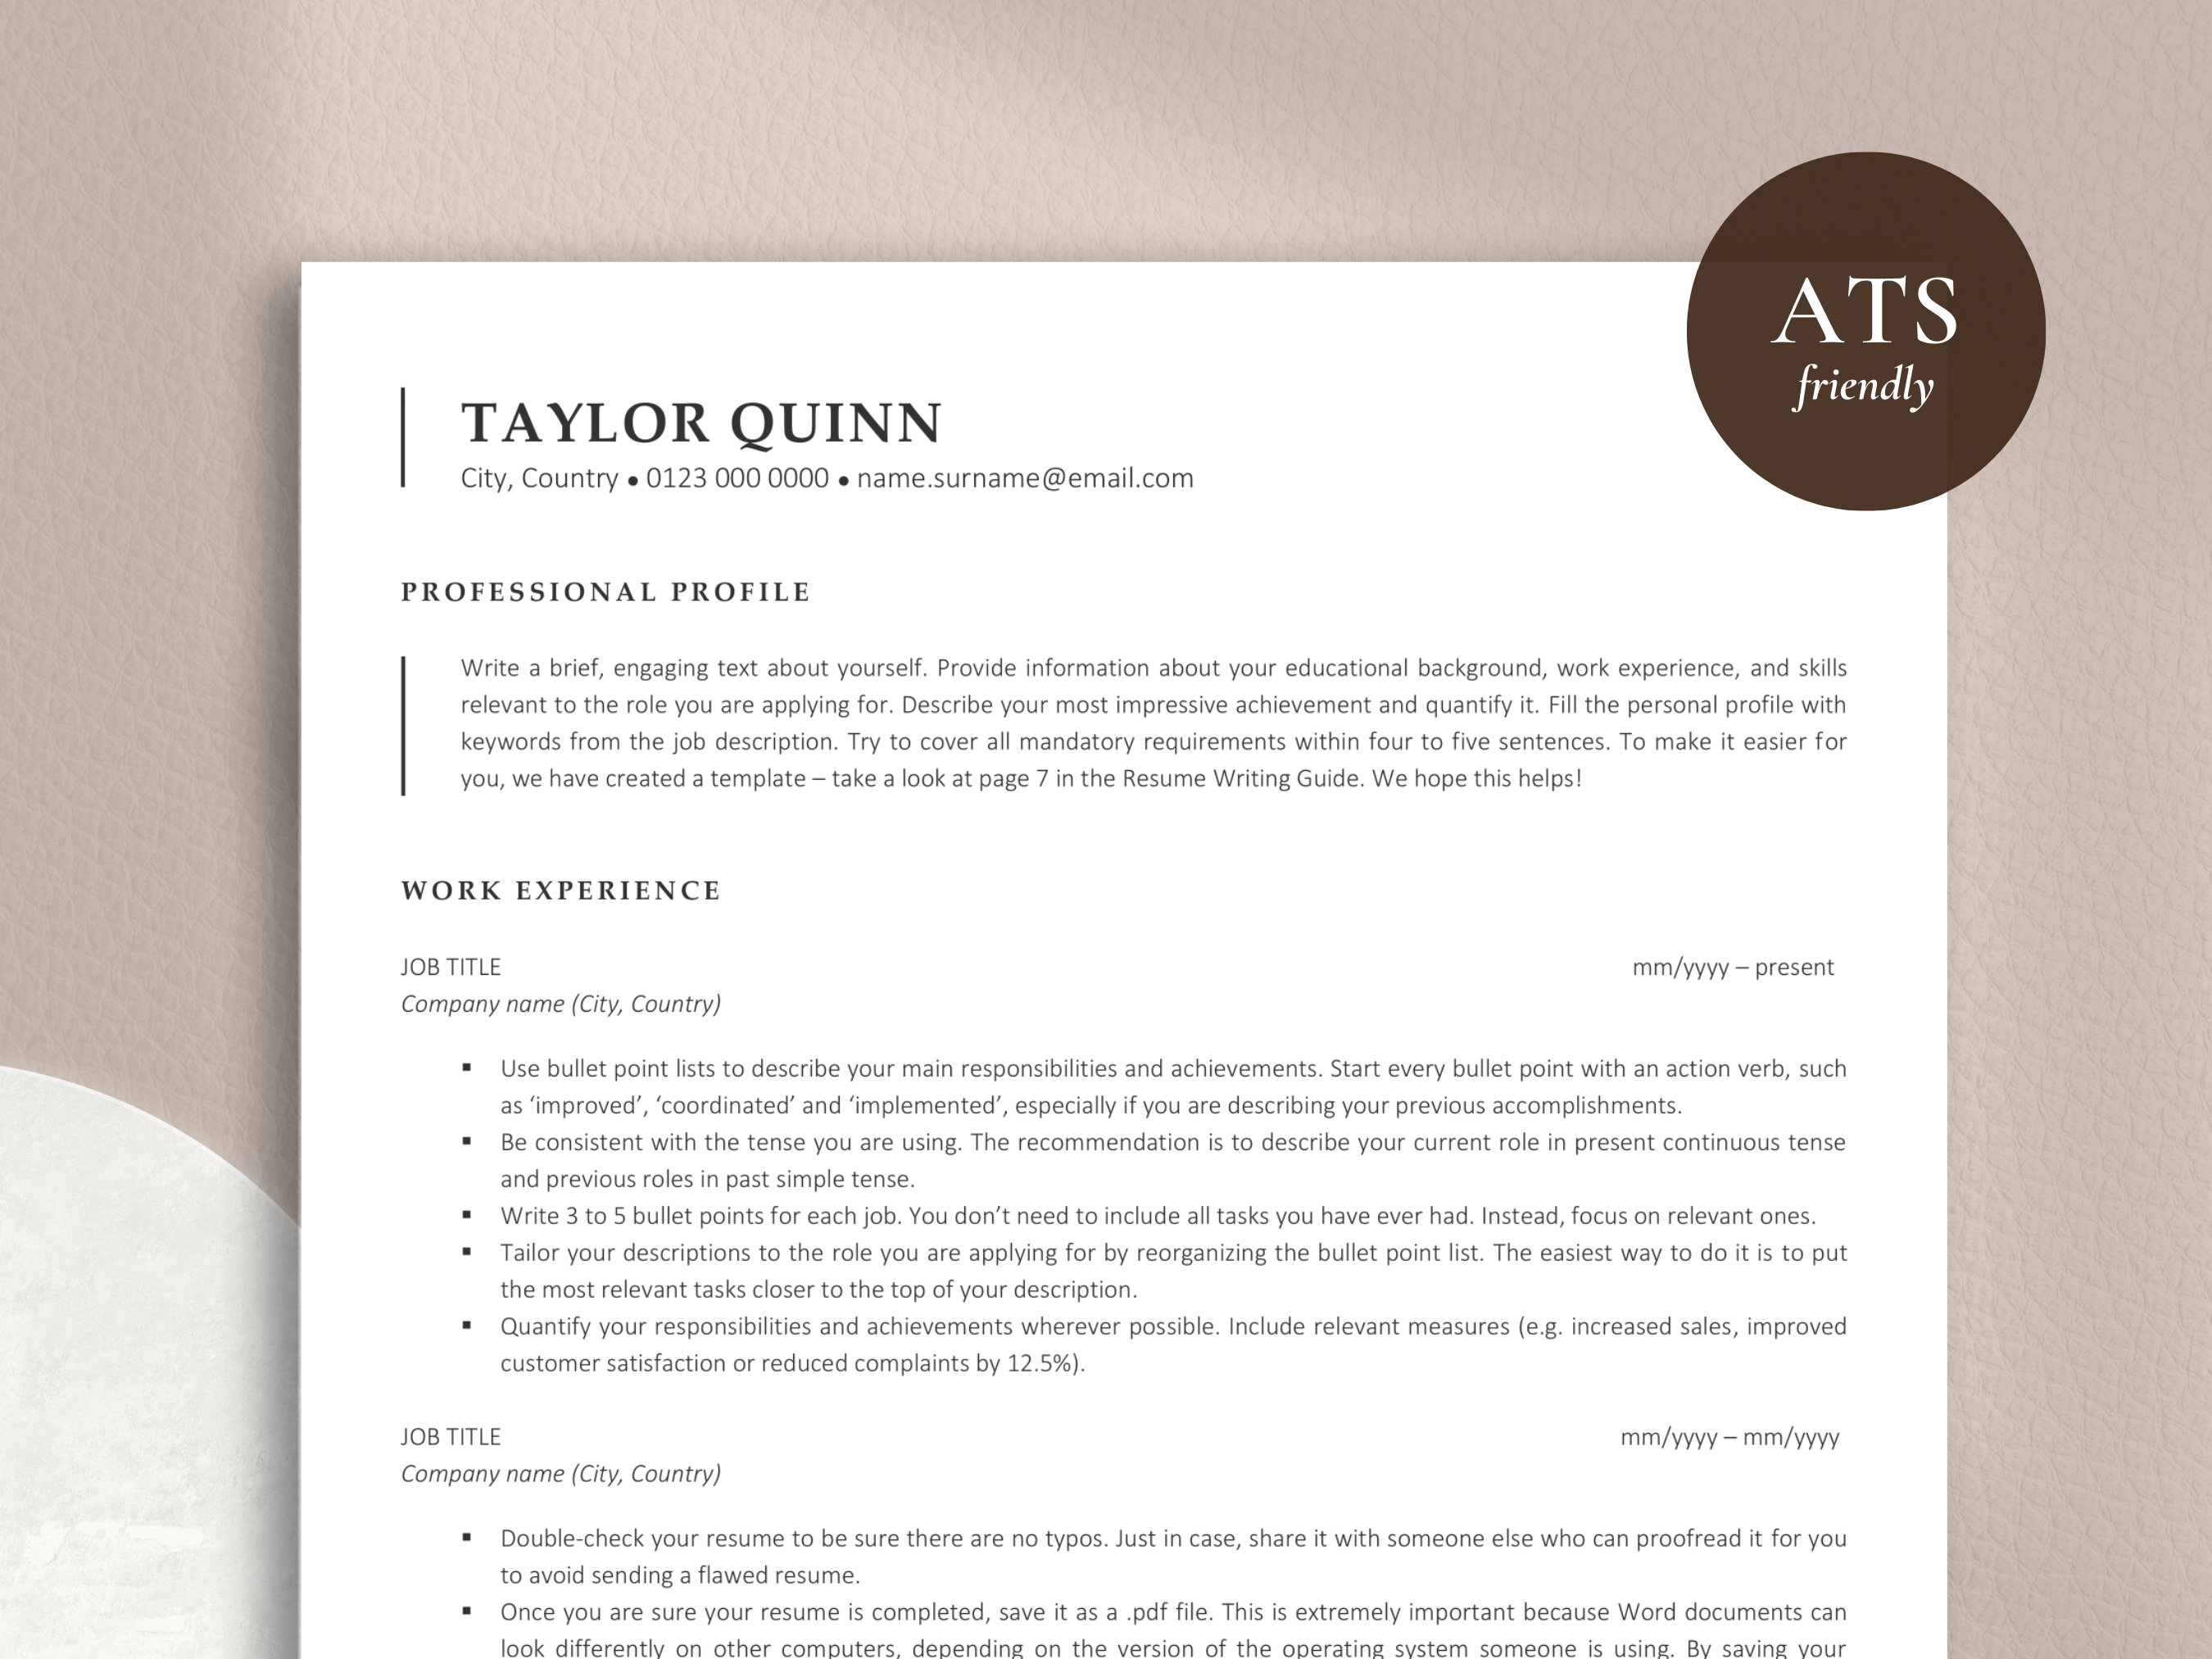 Resume Paper Mockup US Letter, Product Mockups ft. resume & paper